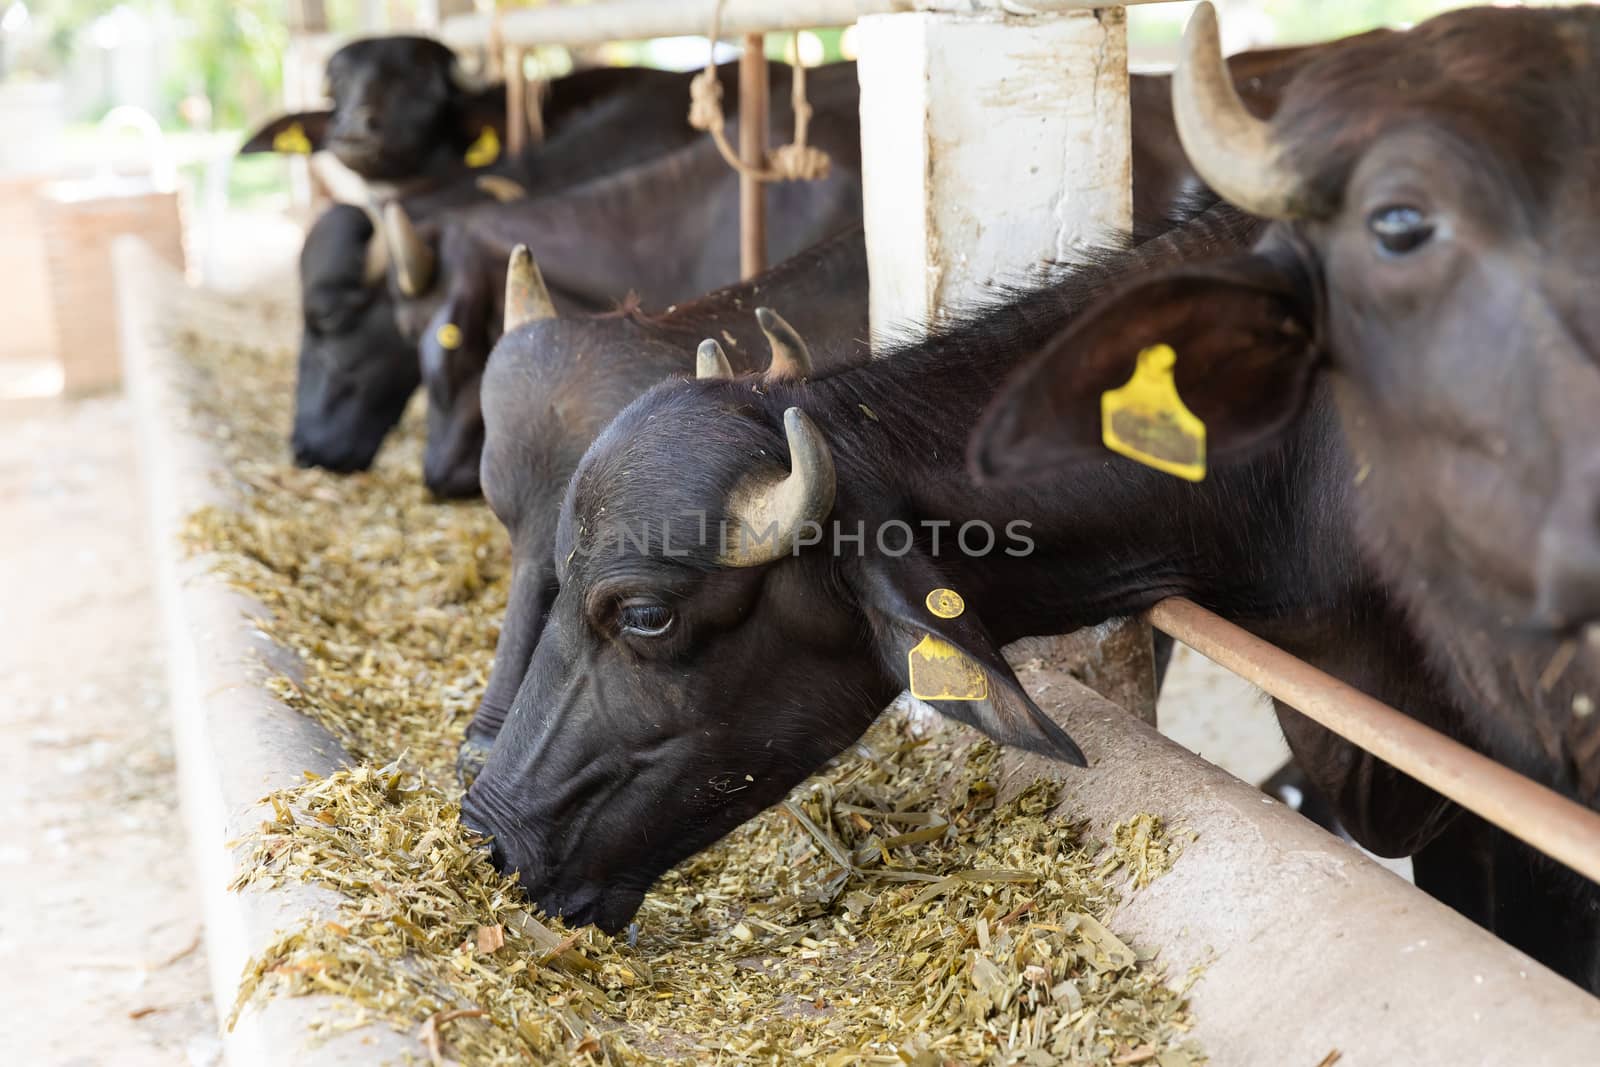 Feeding murrah buffalo with chopped dried hay in farm